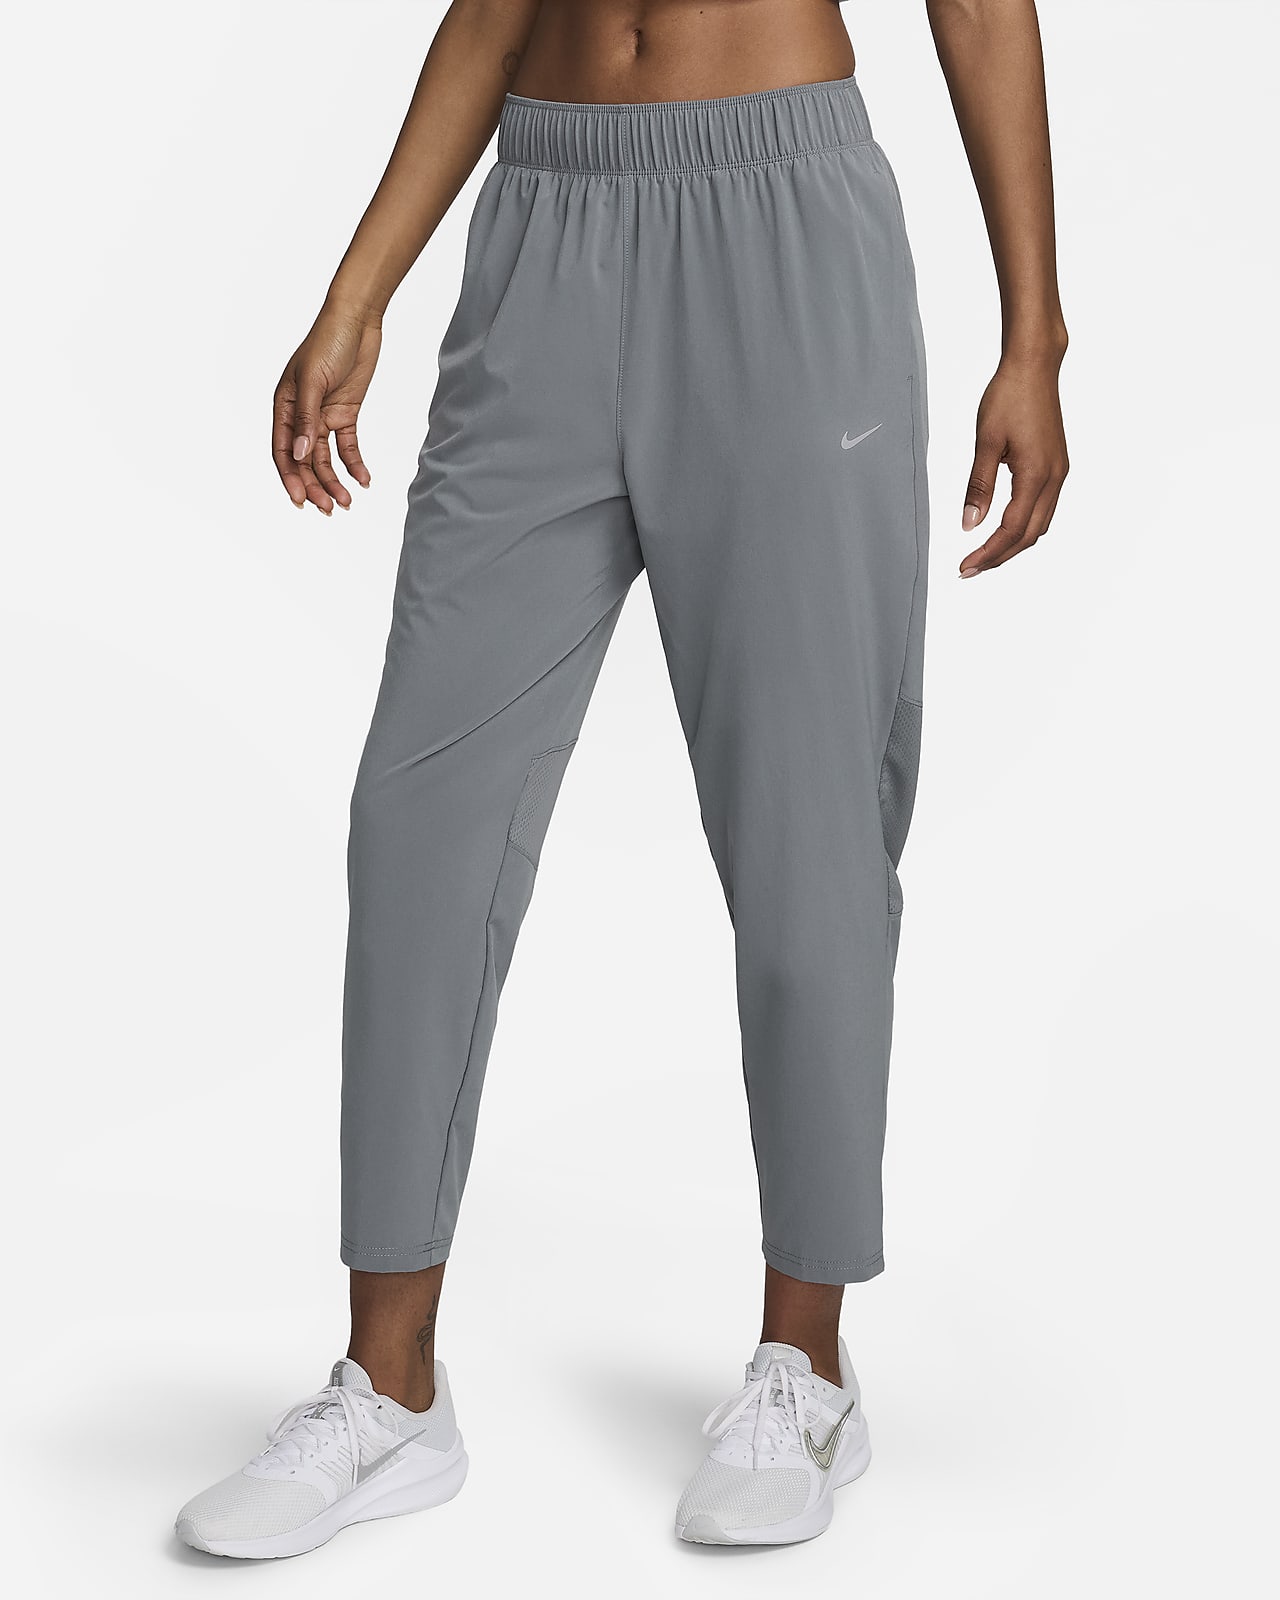 Γυναικείο παντελόνι μεσαίου ύψους 7/8 για τρέξιμο Nike Dri-FIT Fast